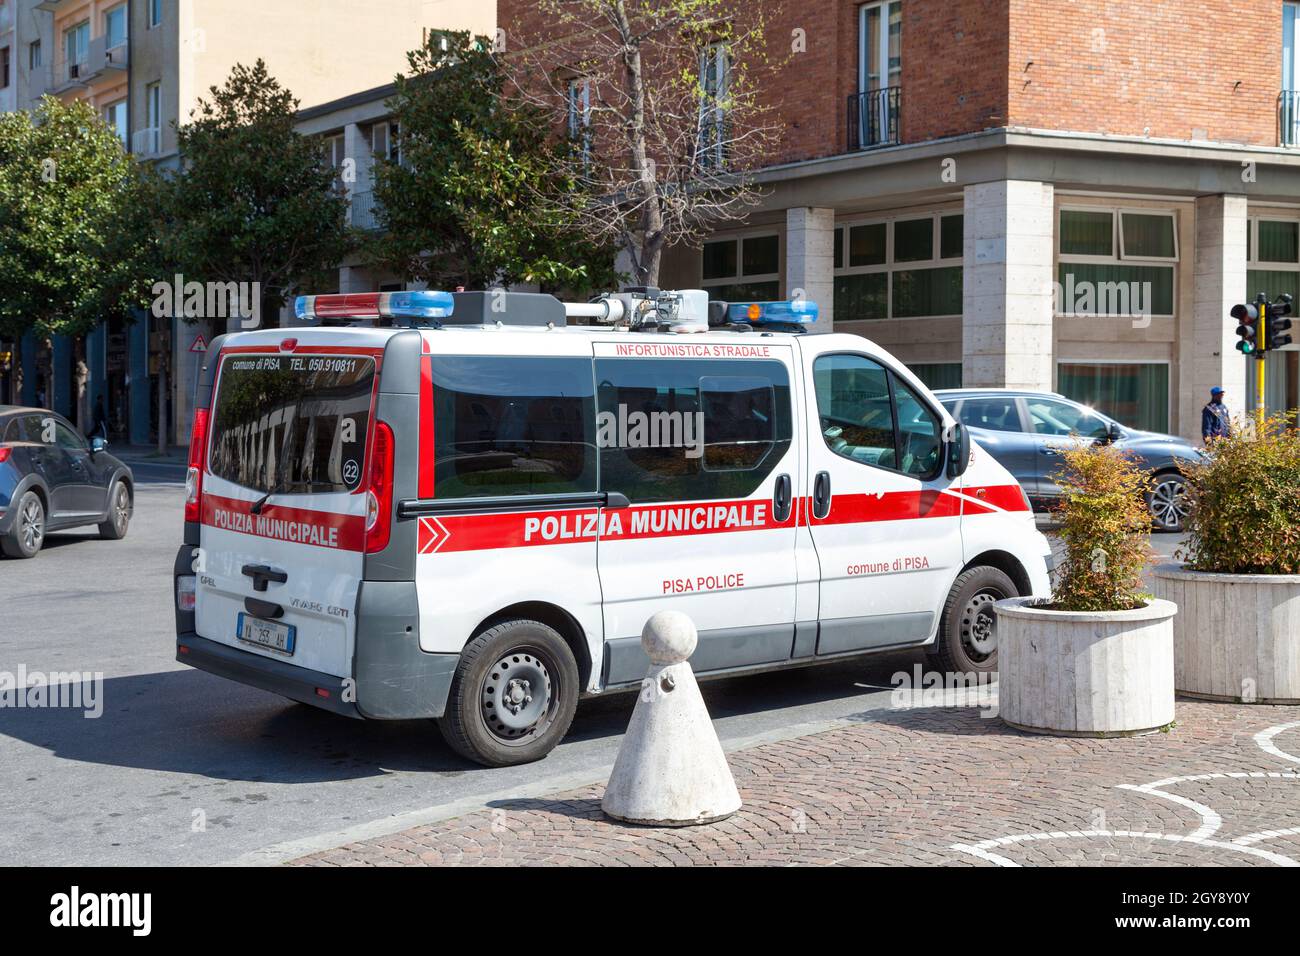 Pise, Italie - Mars 31 2019: Van de la Polizia Municipalité garée à l'extérieur de la gare. Banque D'Images